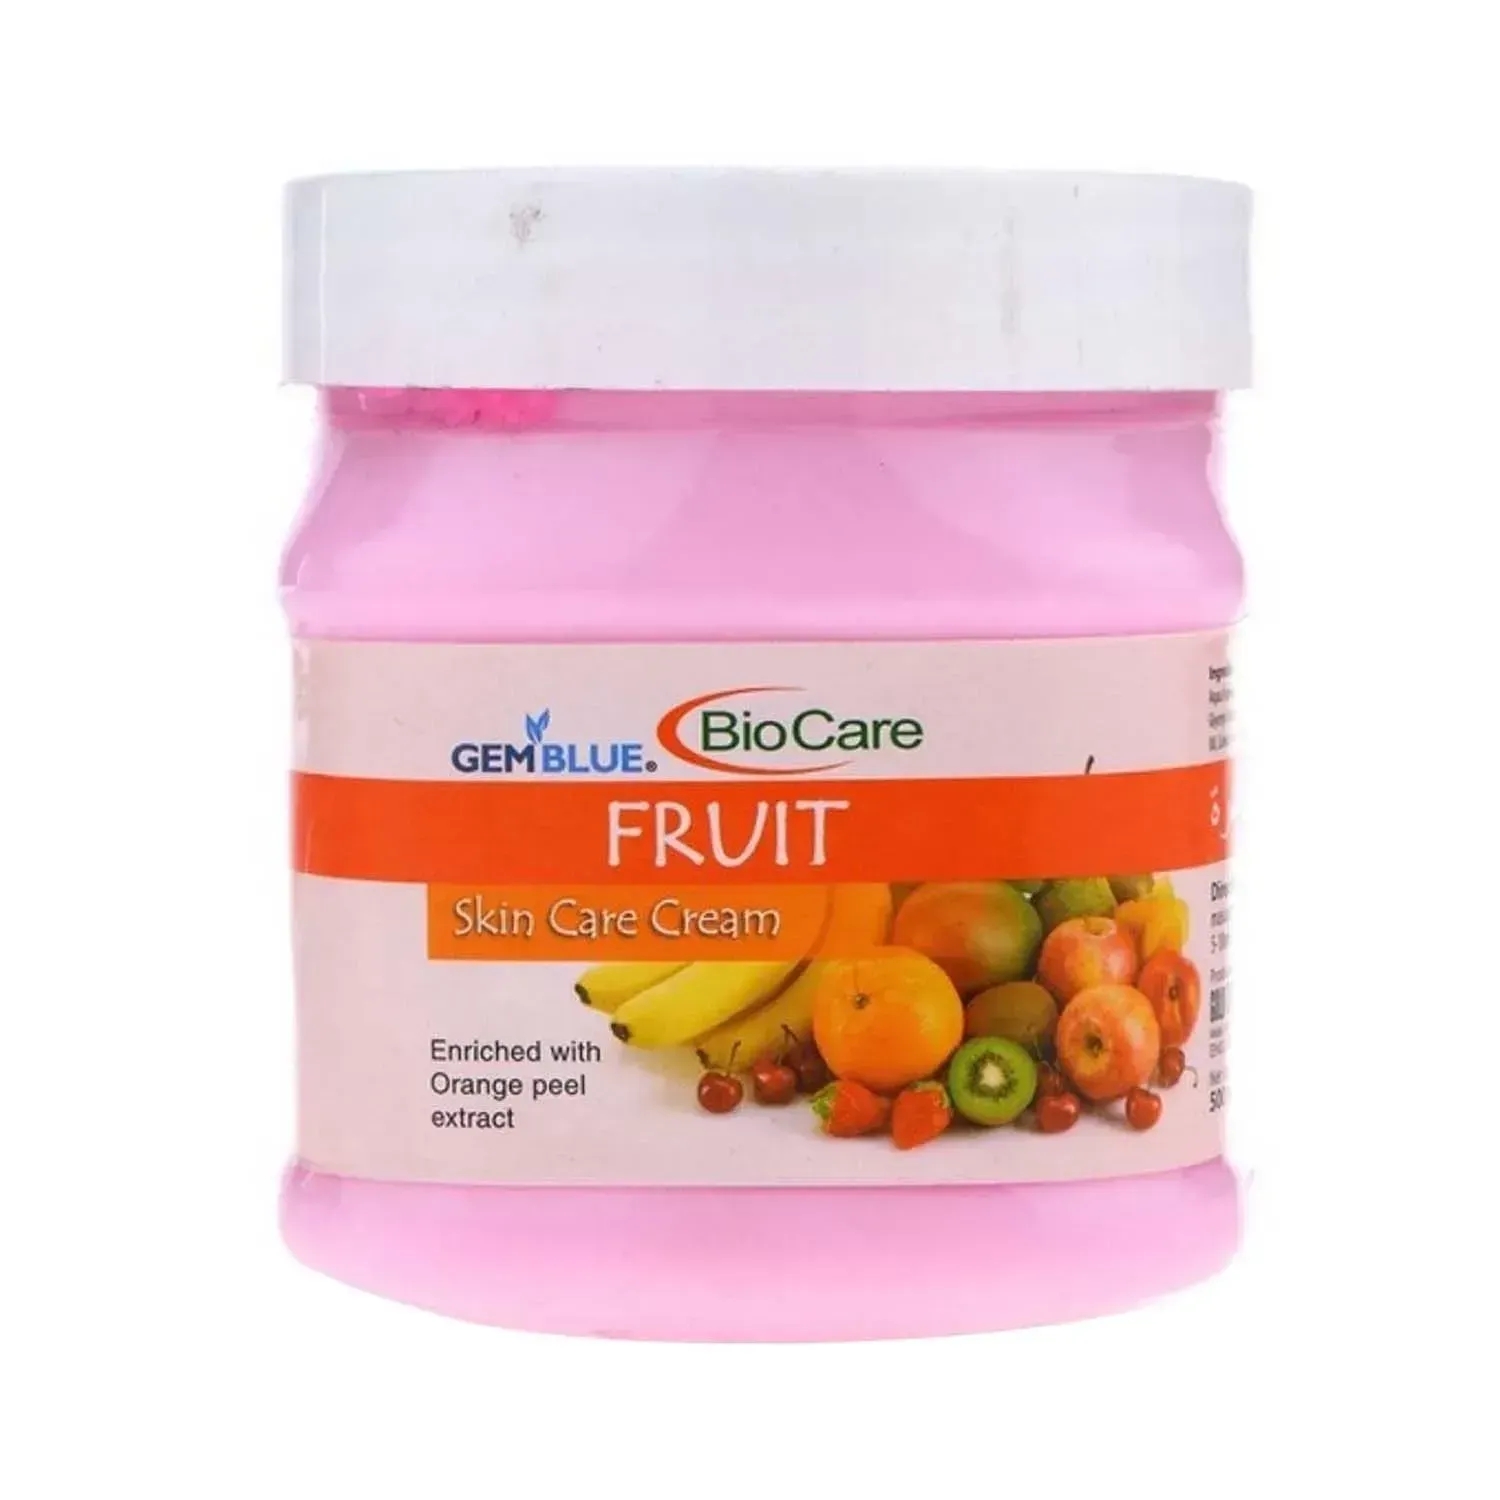 Gemblue Biocare | Gemblue Biocare Fruit Skin Care Cream - (500ml)